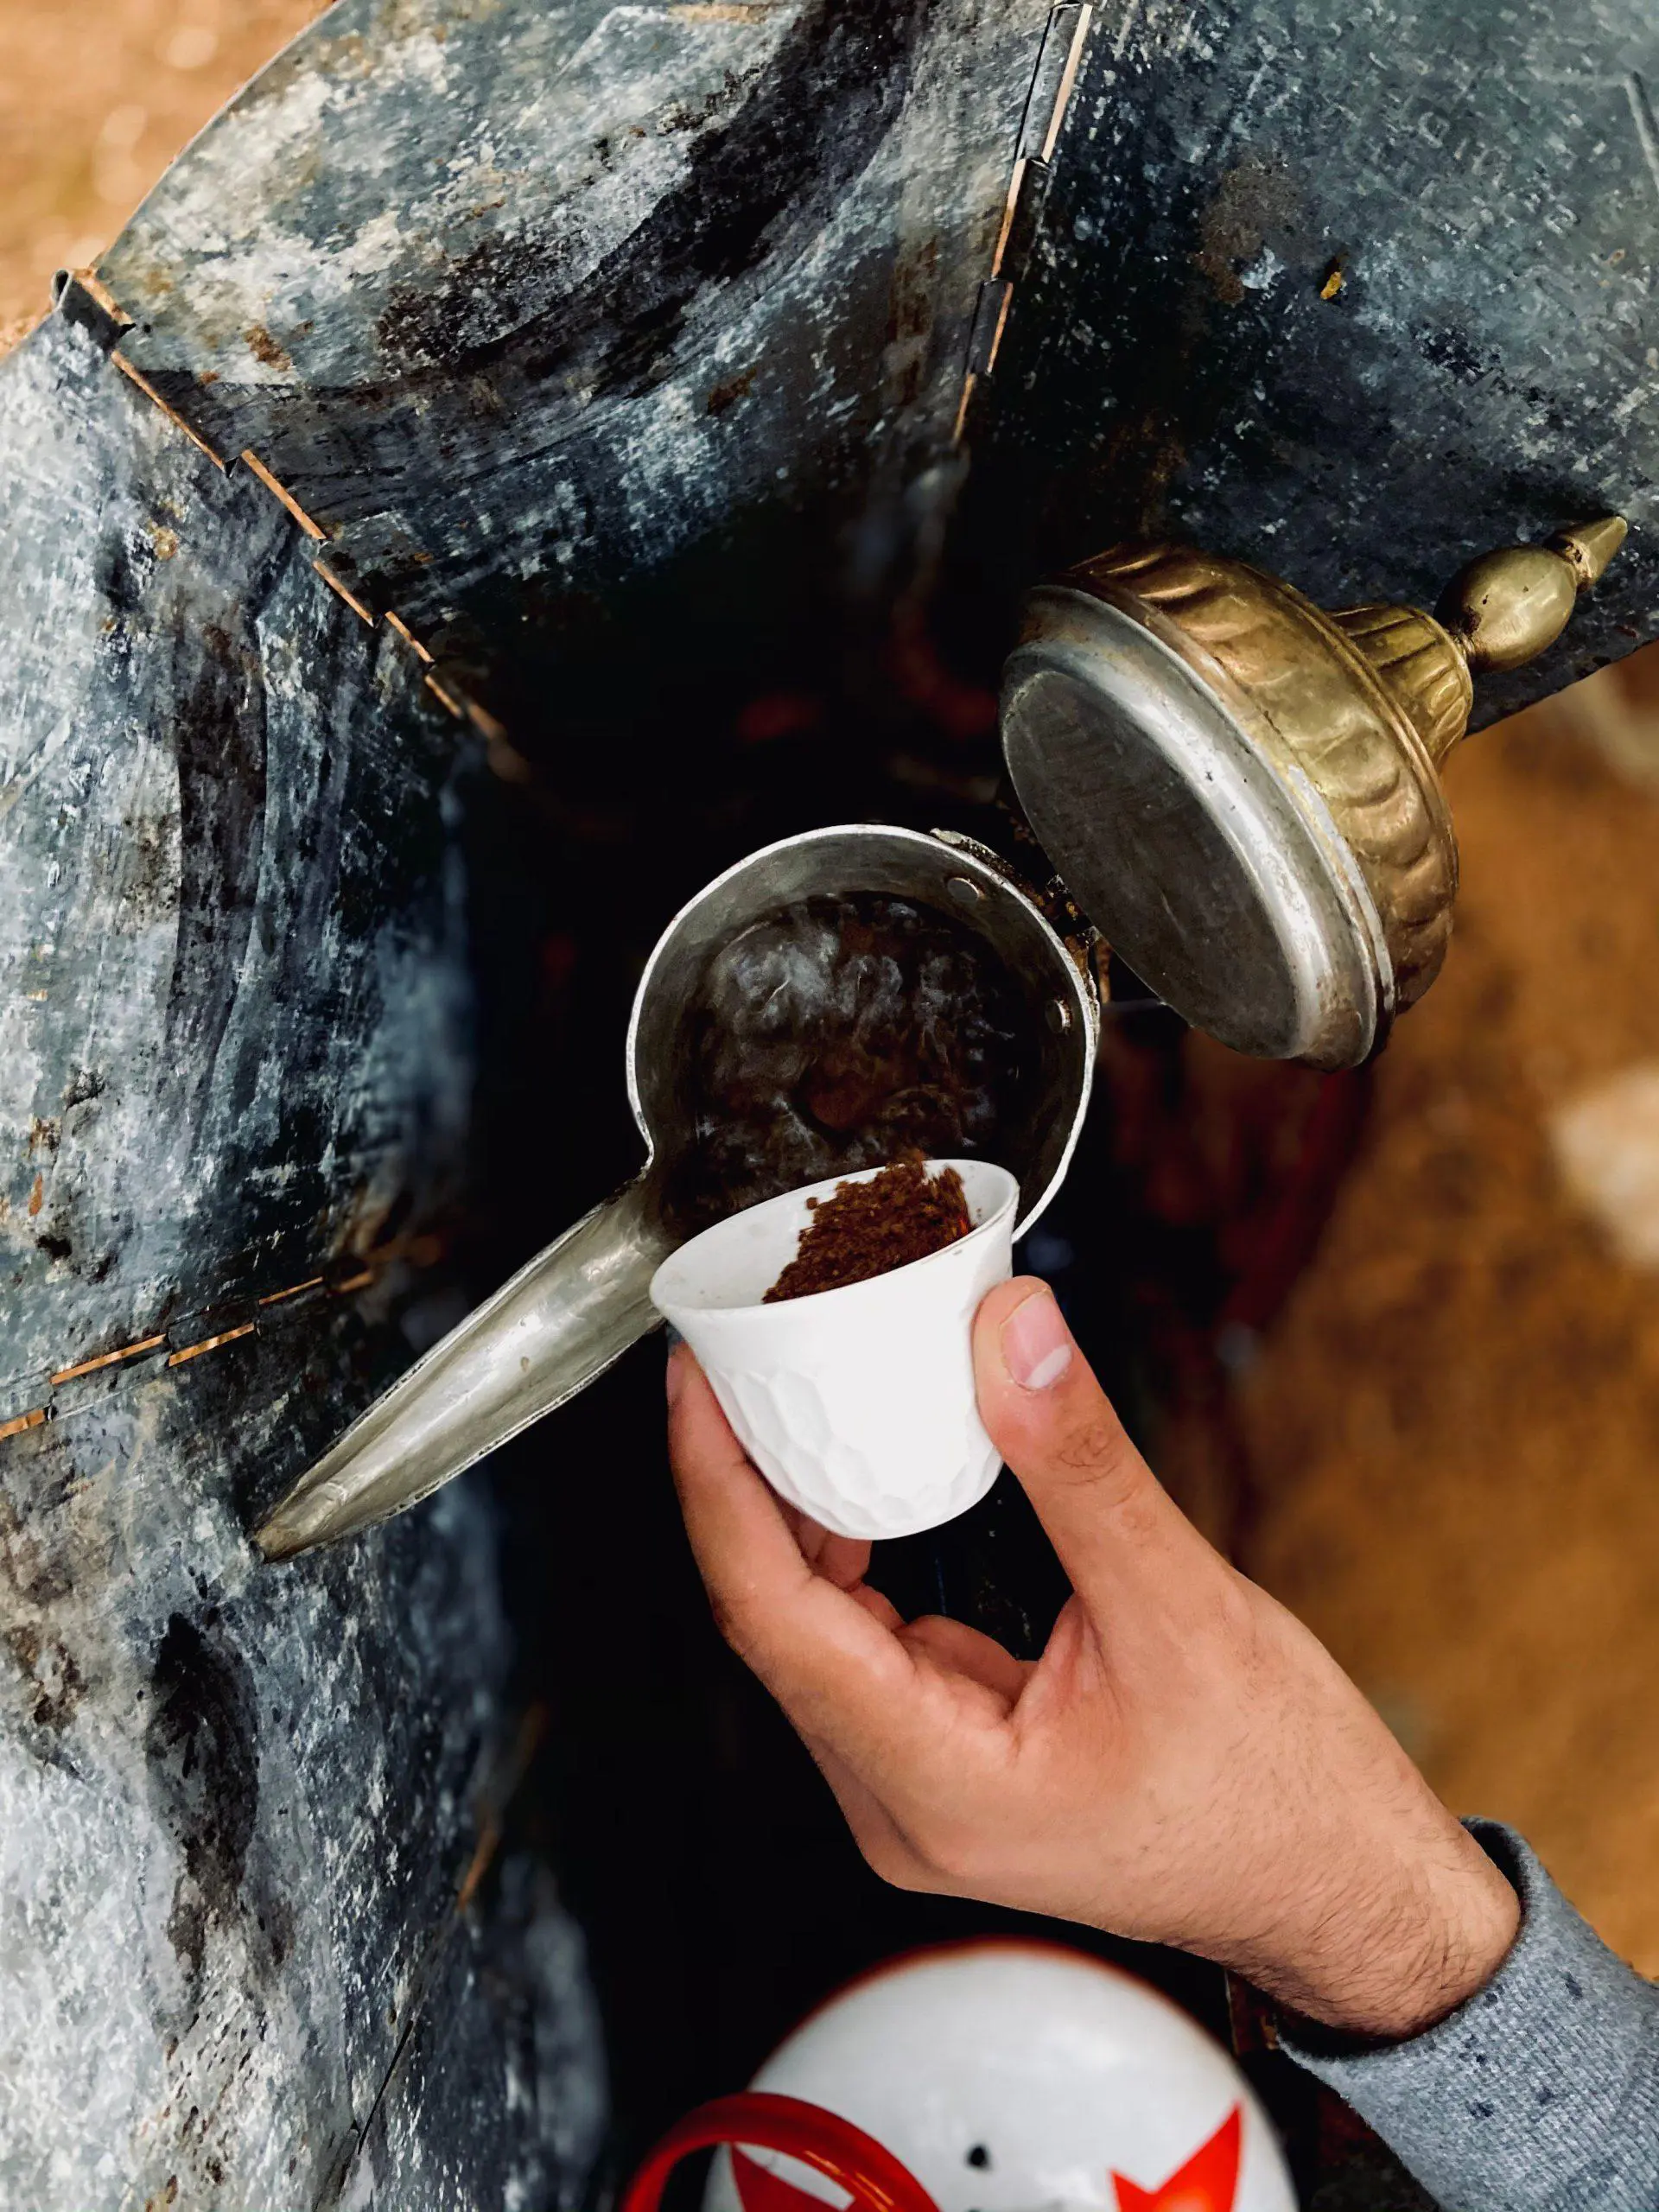 تحضير قهوة عربية مع إظهار حسن الضيافة في المملكة العربية السعودية - كول انك